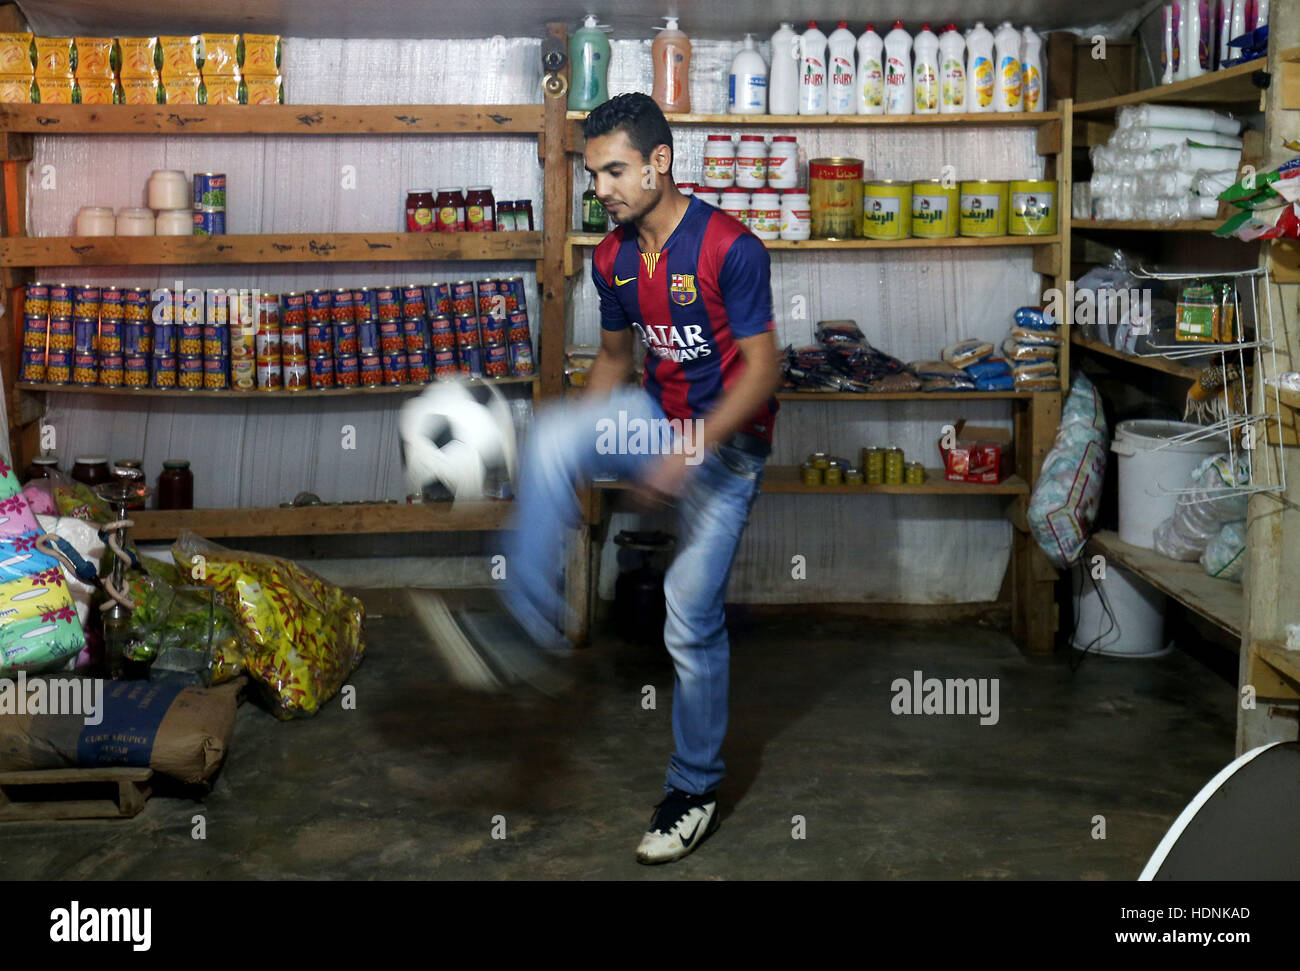 Syrischer Flüchtling Ishac Taleb, 20, ist Fußball verrückt und Barcelona unterstützt, läuft im Lager Shop im Bekaa-Tal, Libanon, nahe der syrischen Grenze. Stockfoto